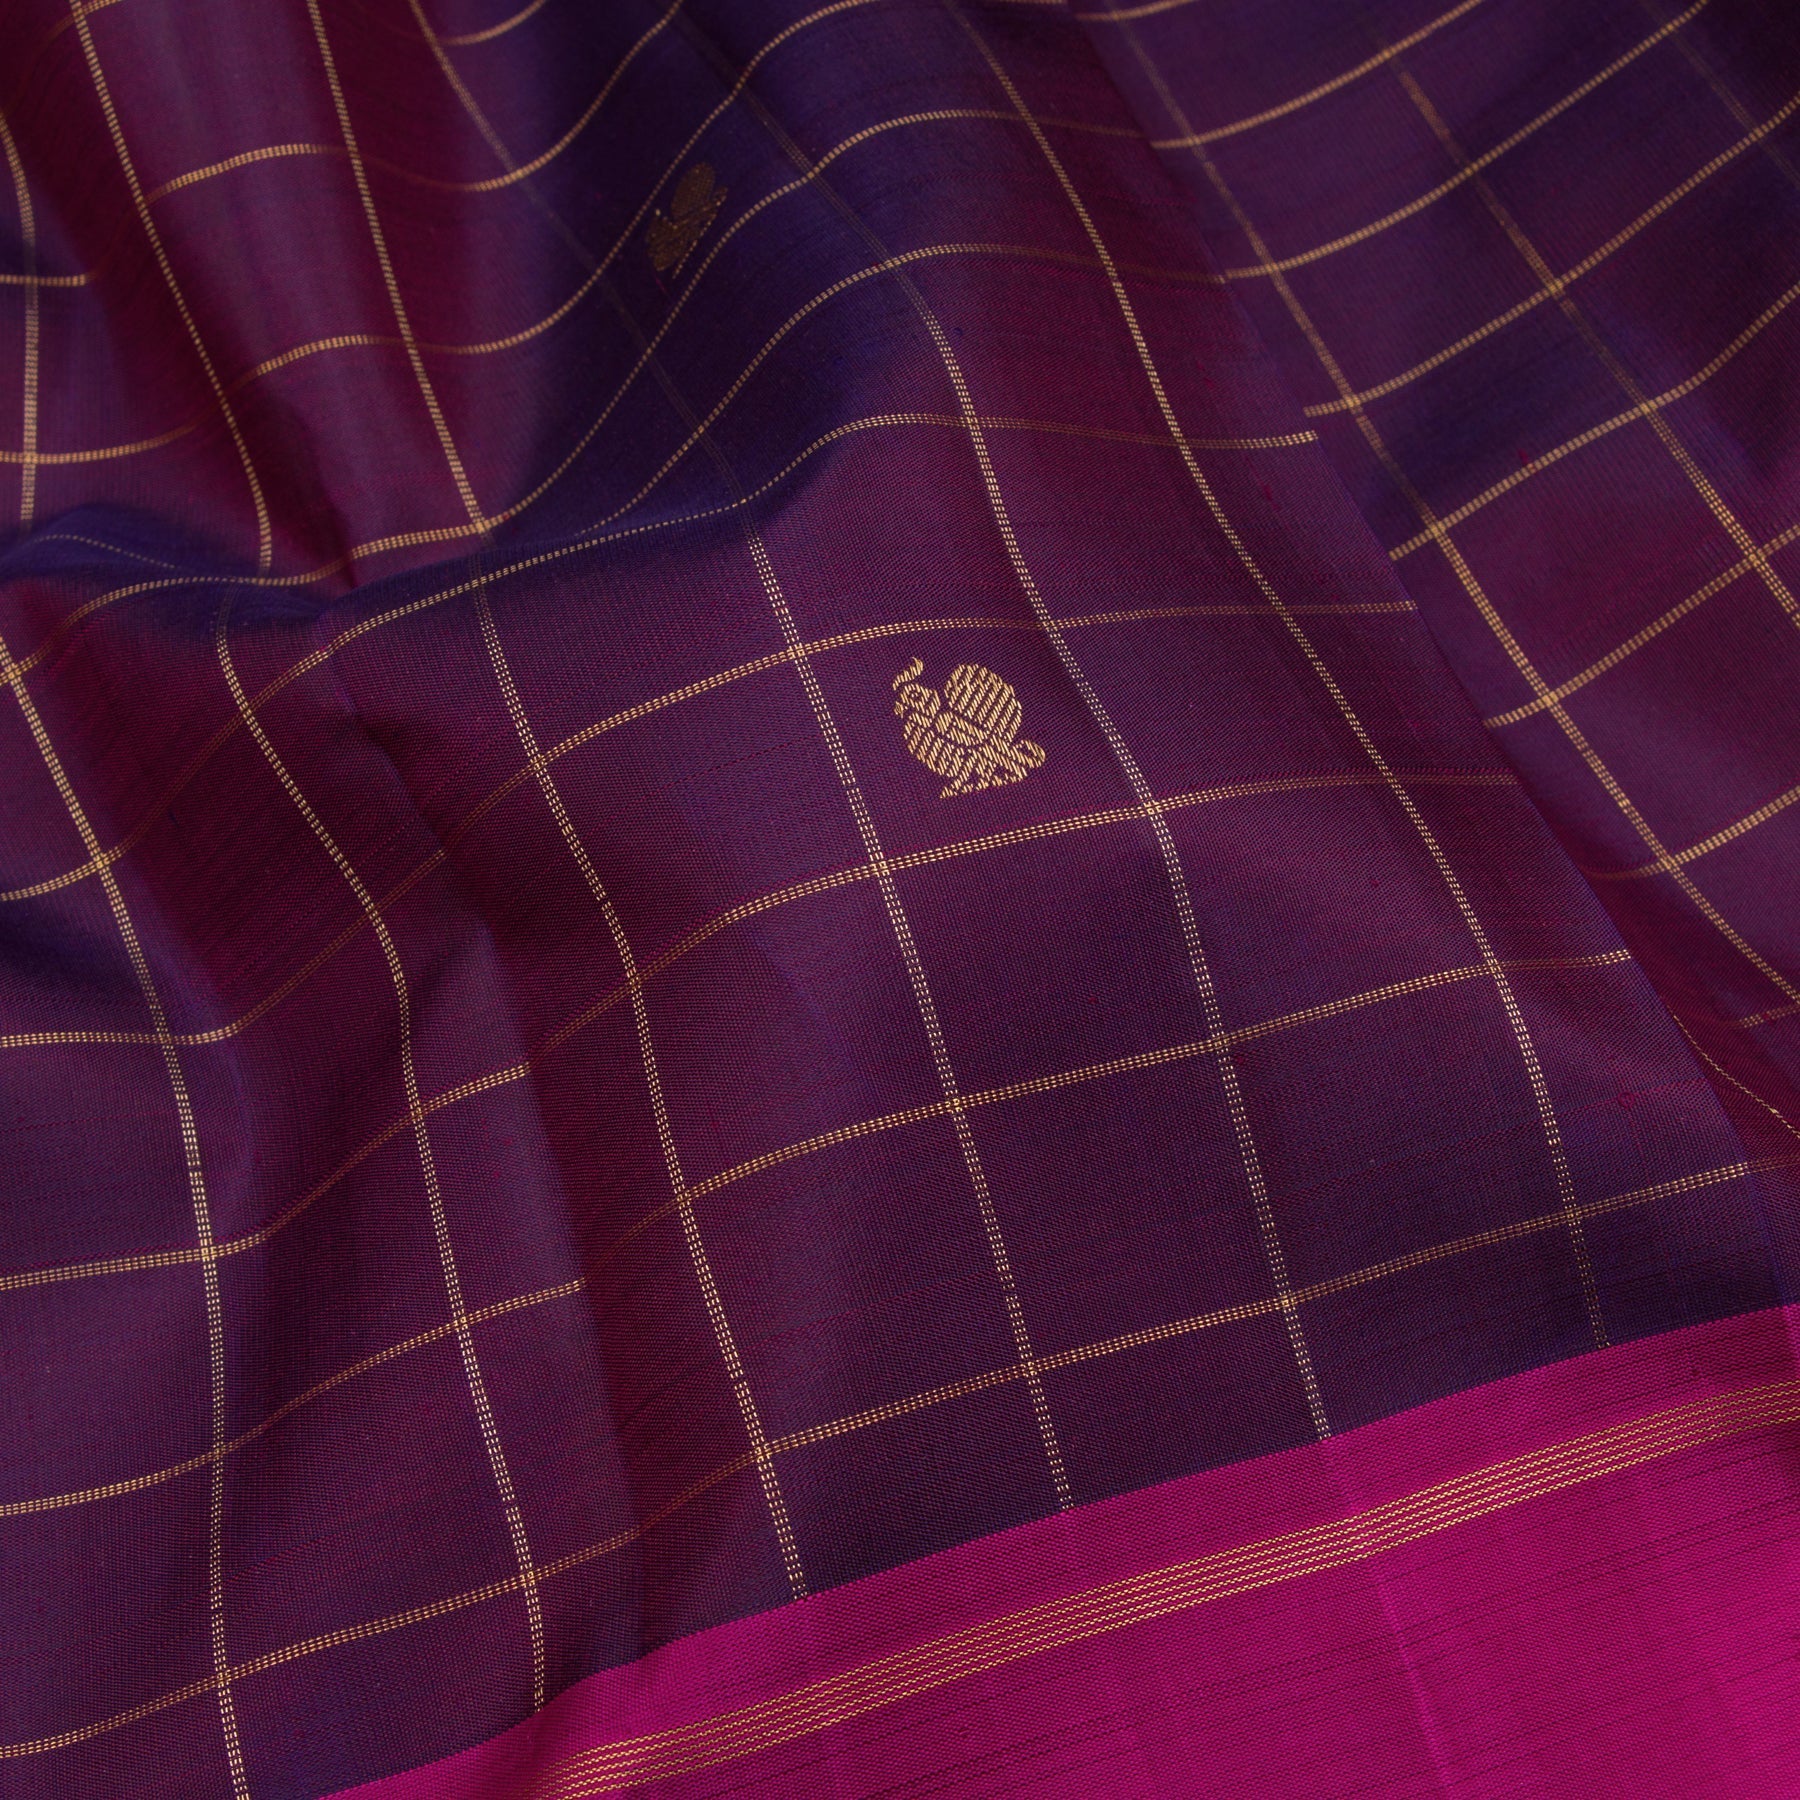 Kanakavalli Kanjivaram Silk Sari 23-595-HS001-05332 - Fabric View